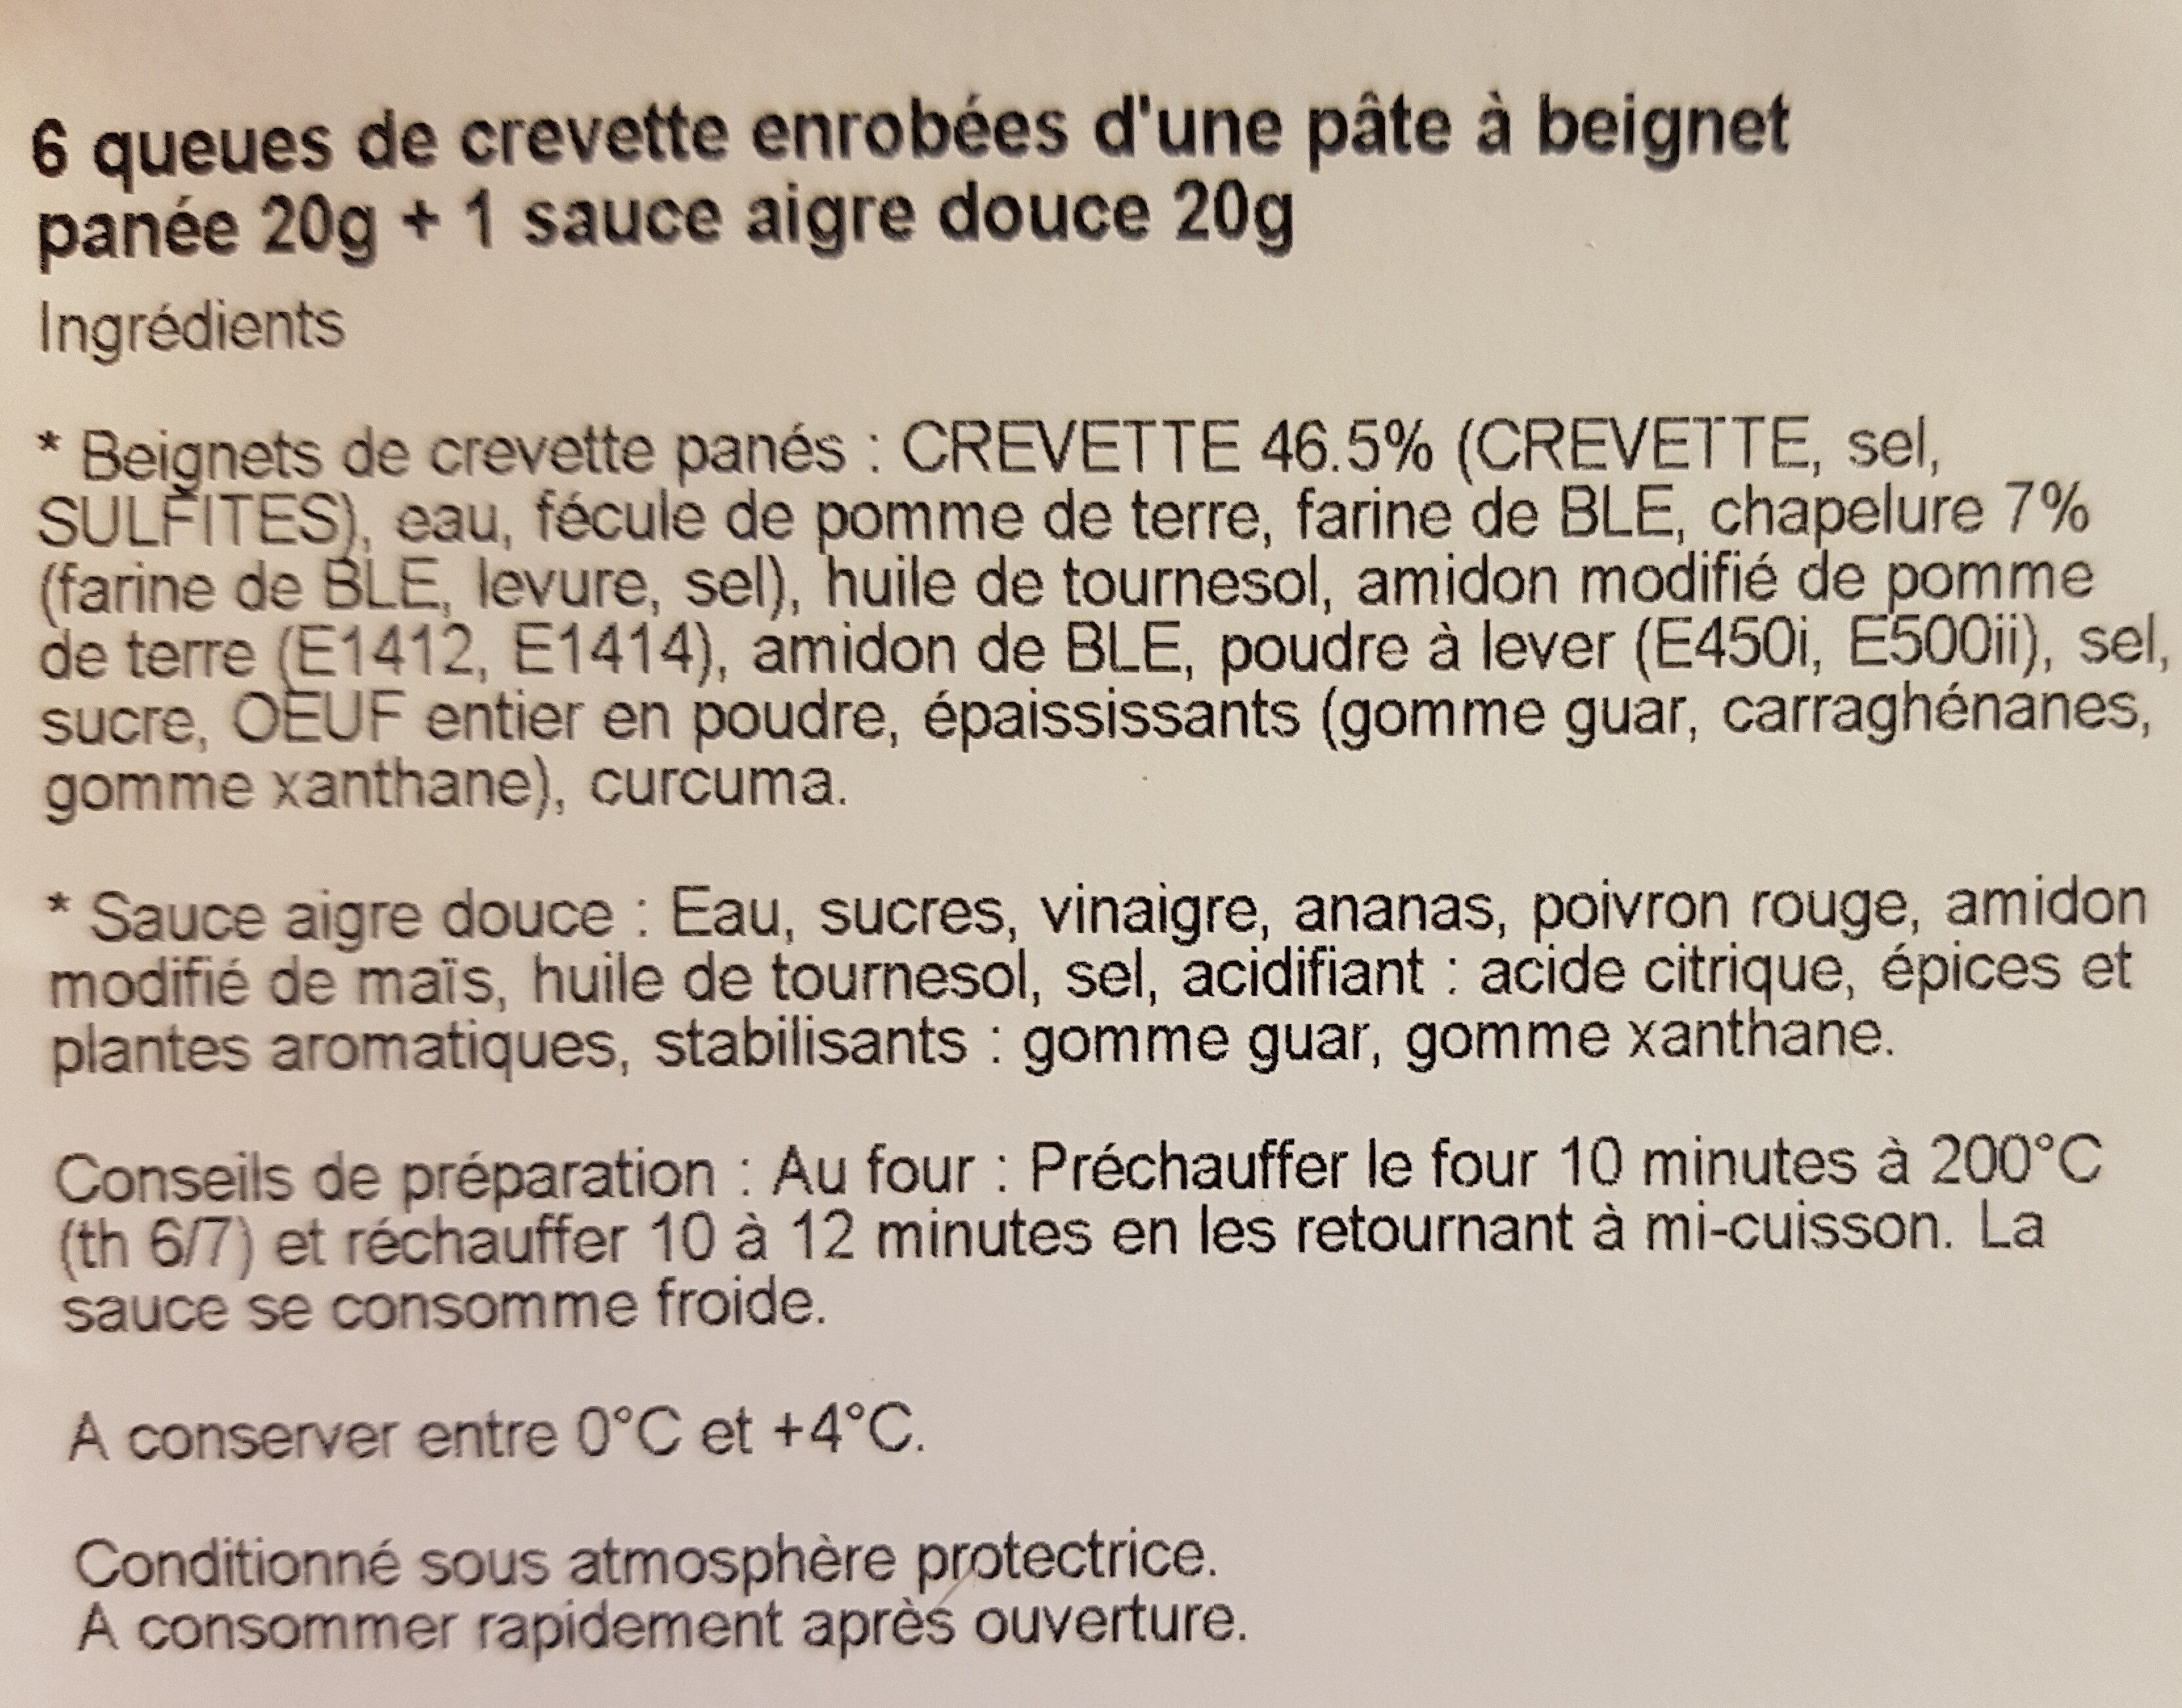 Beignets de crevette panés - المكونات - fr